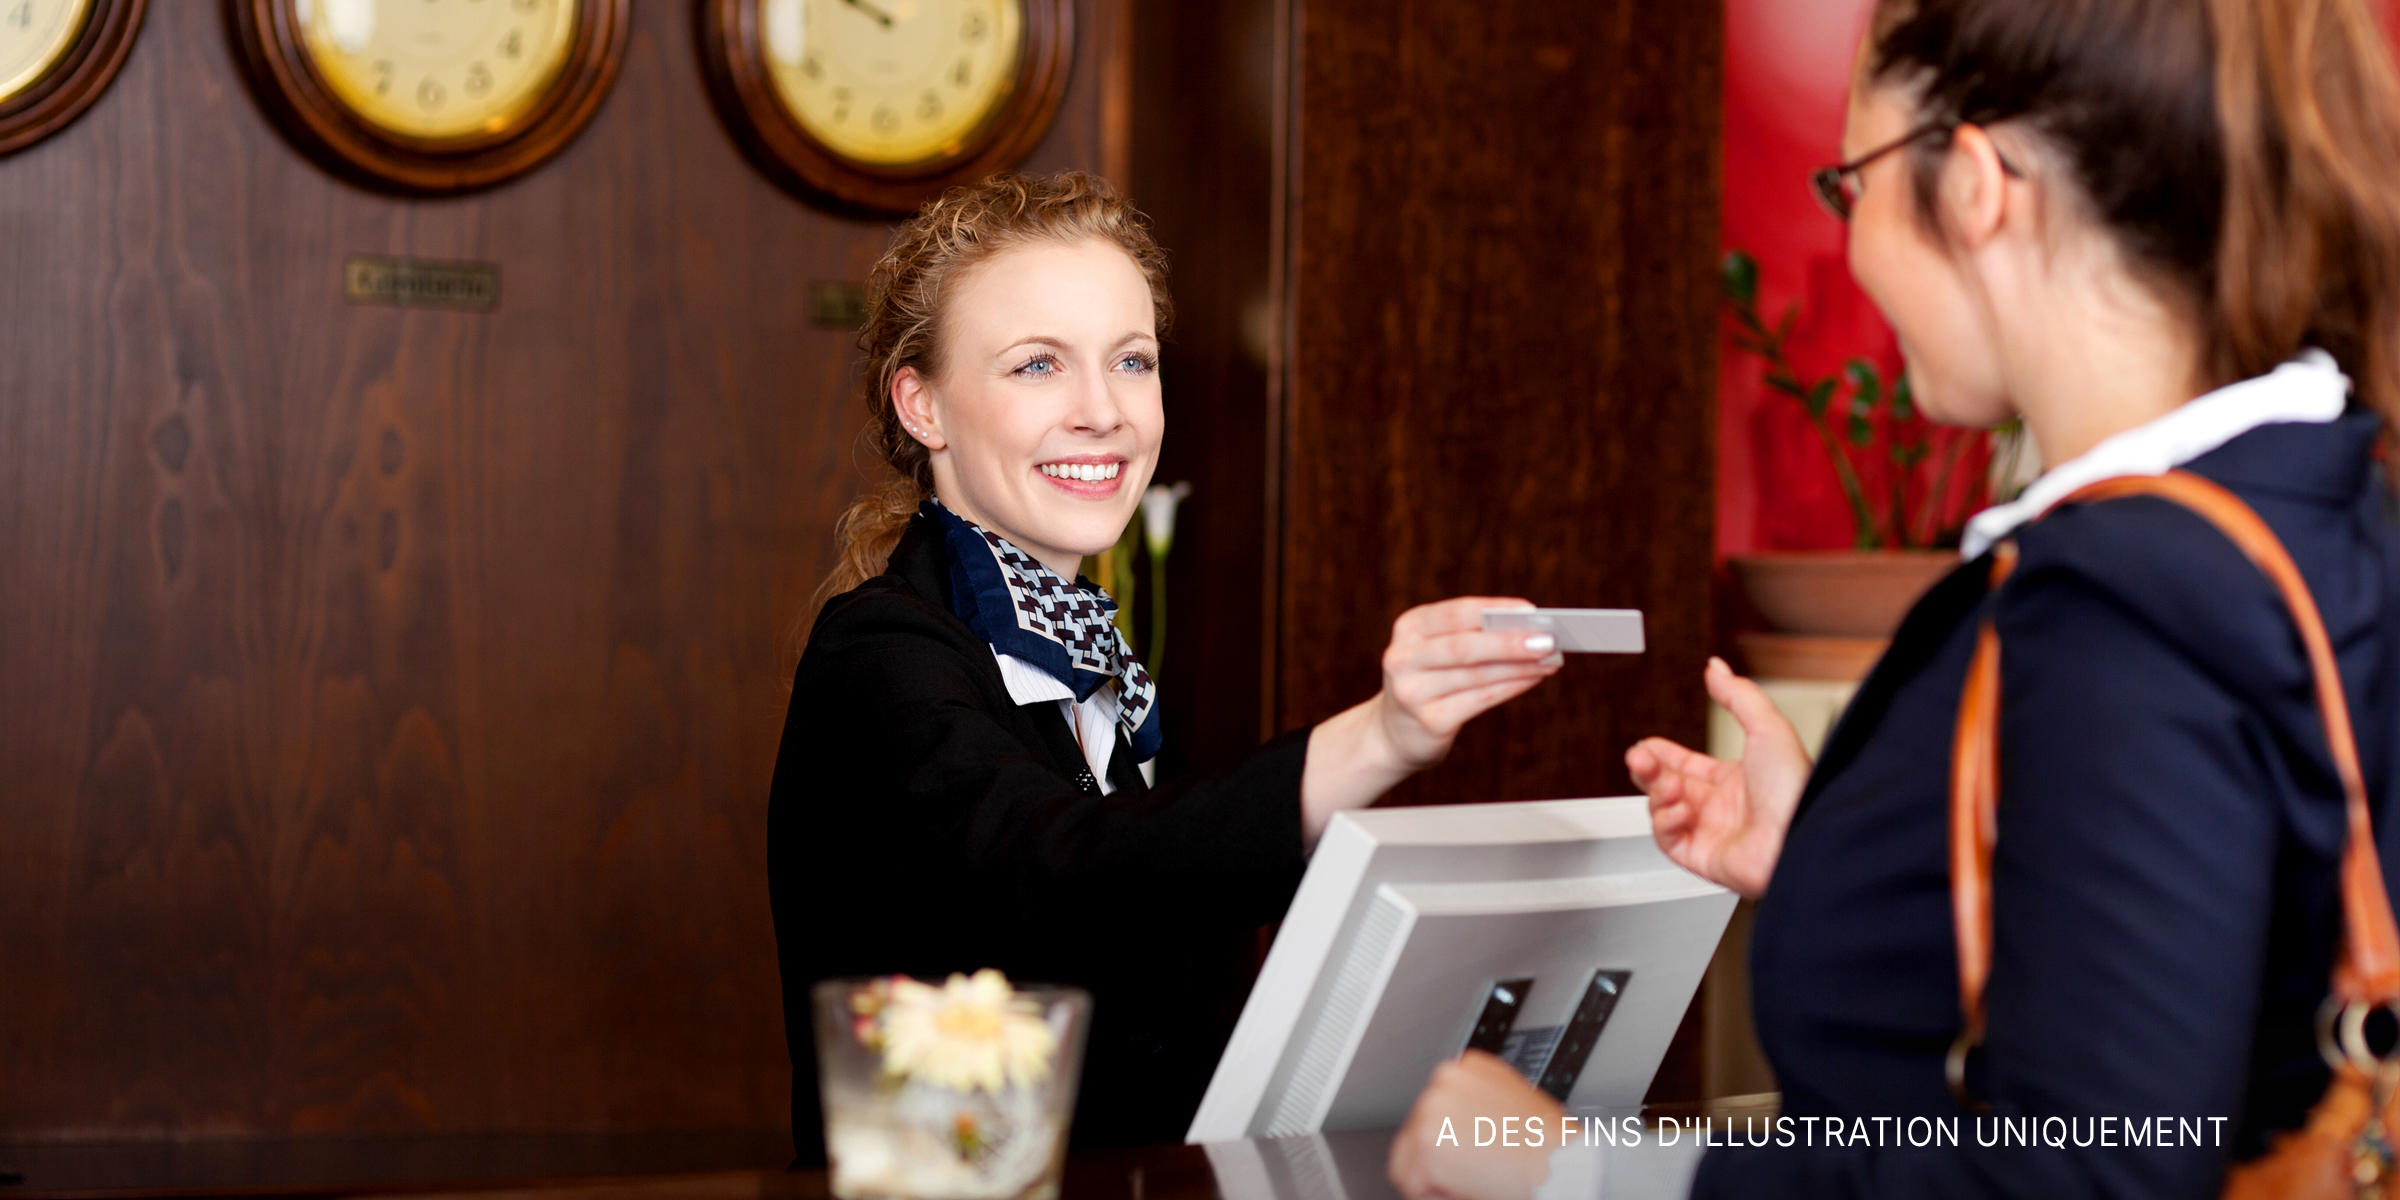 Une réception dans un hôtel | Source : Shutterstock